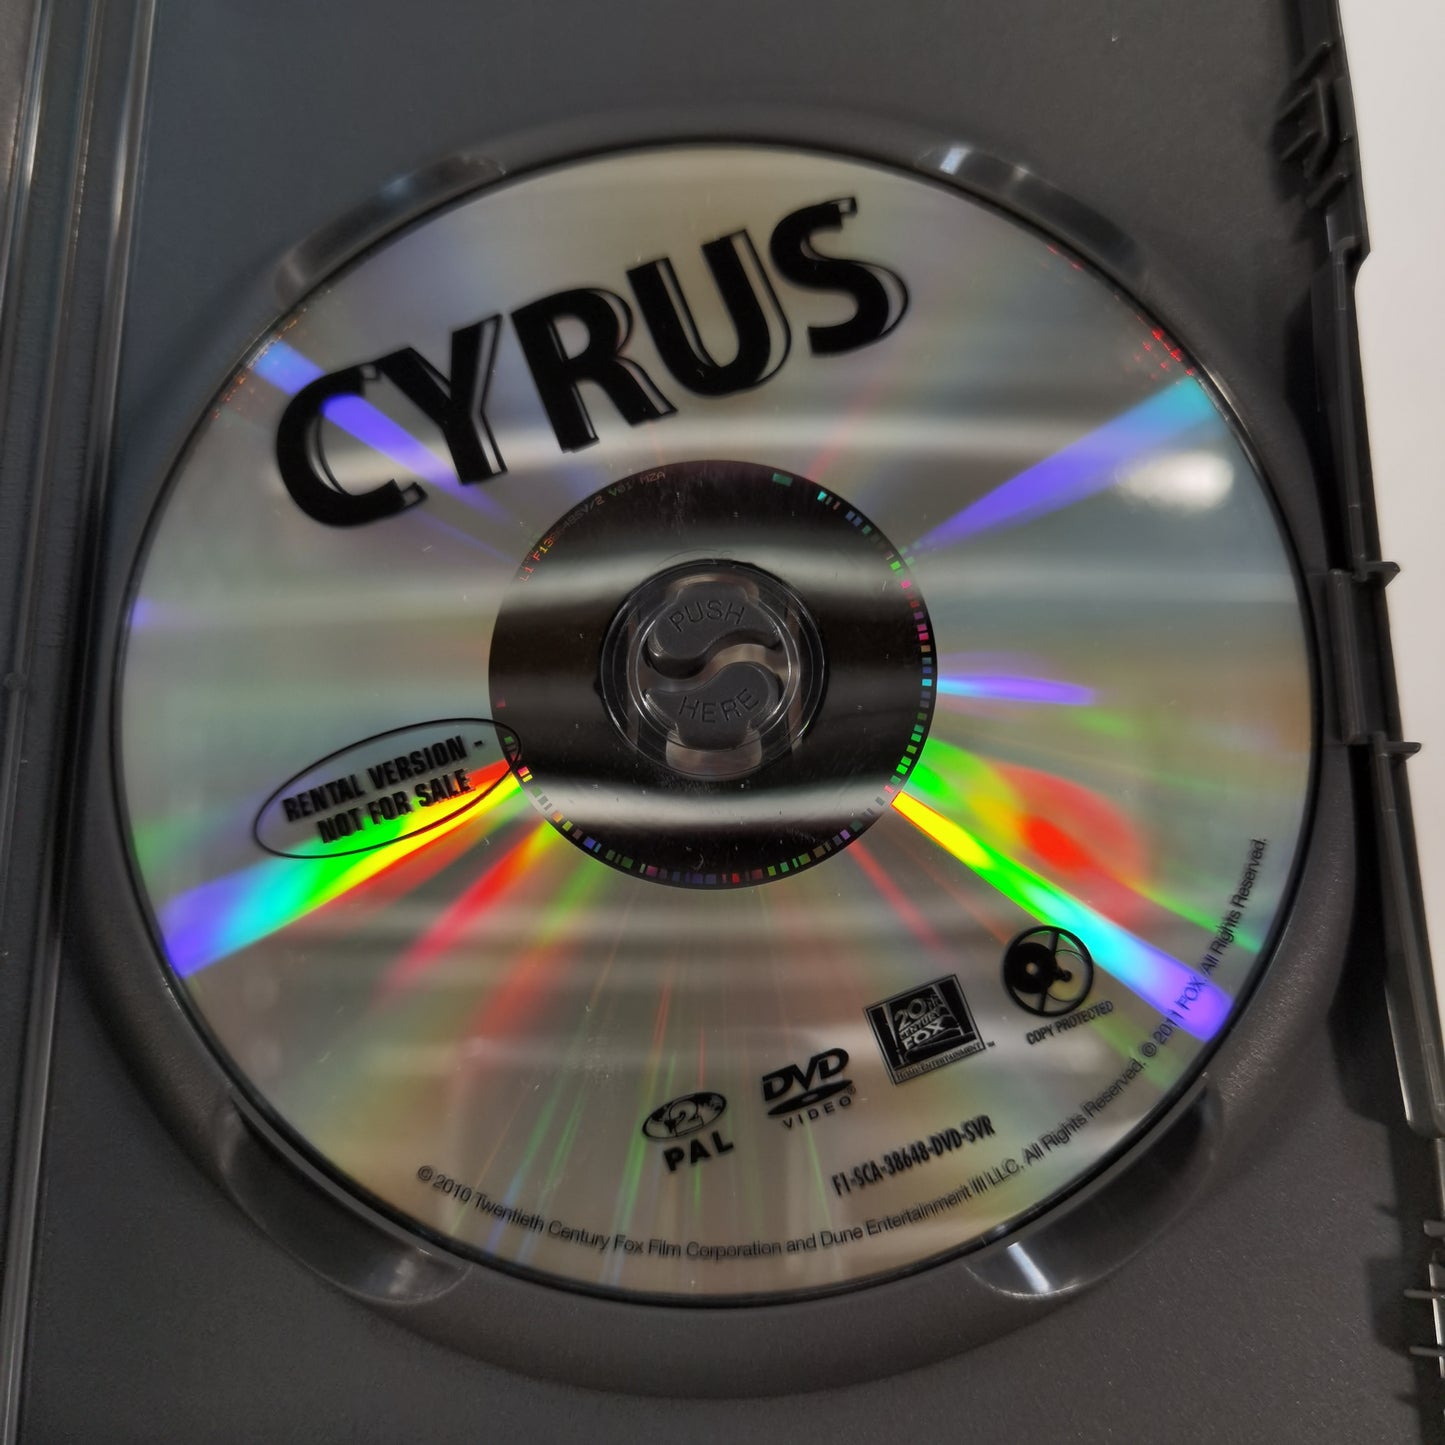 Cyrus (2010) - DVD DK 2011 RC